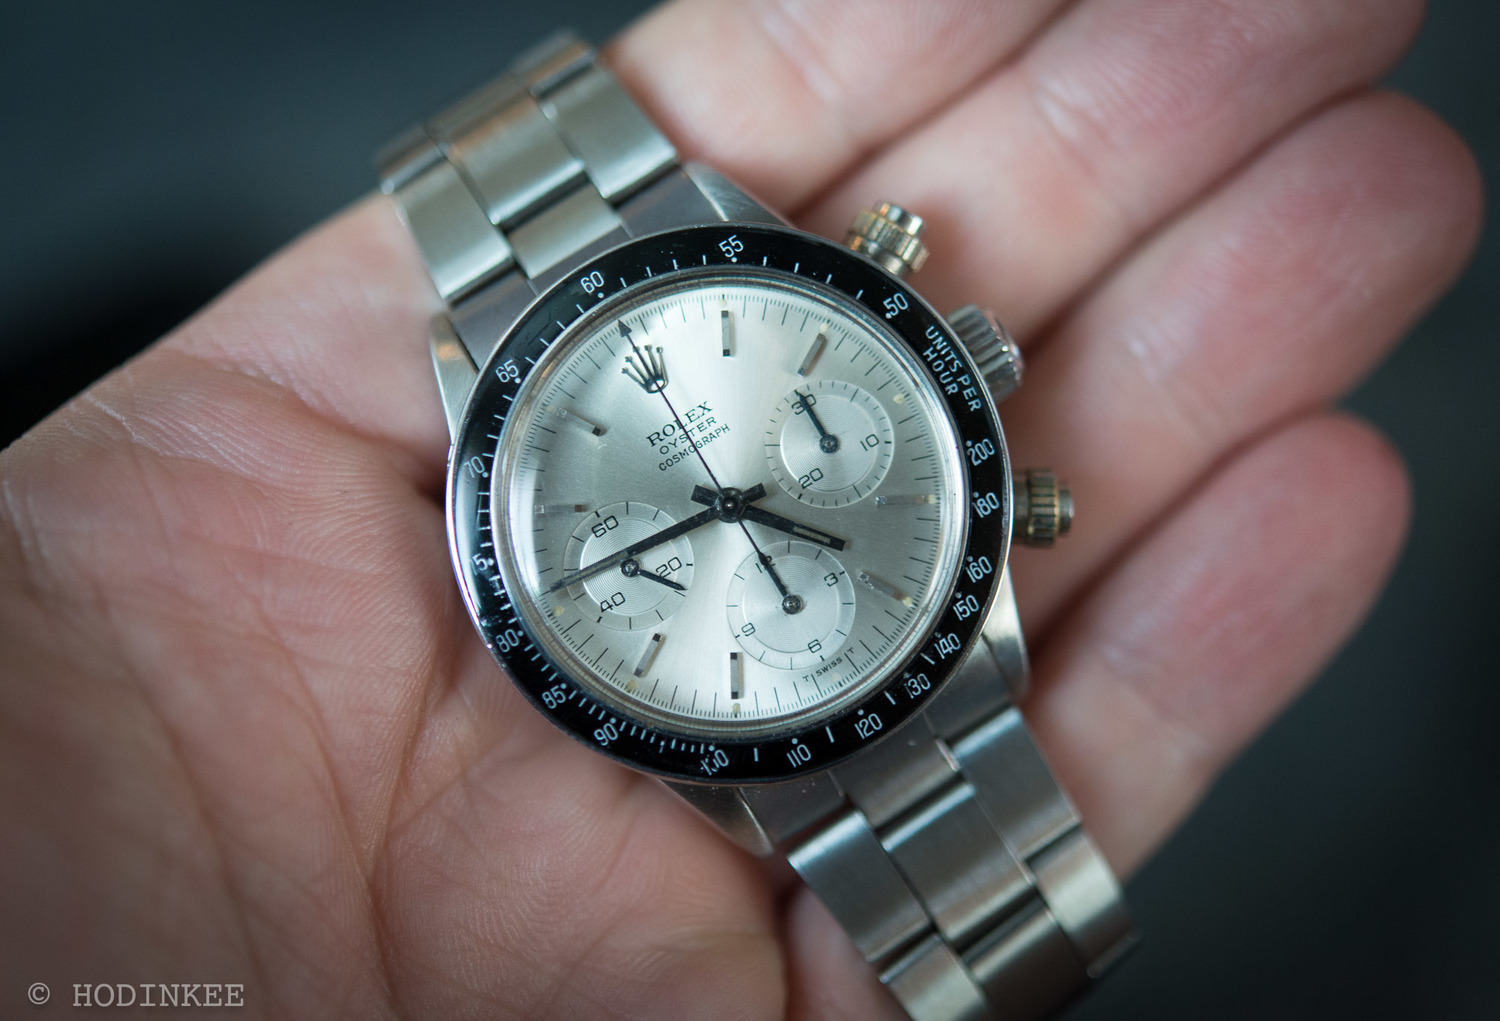 replica luxury watches